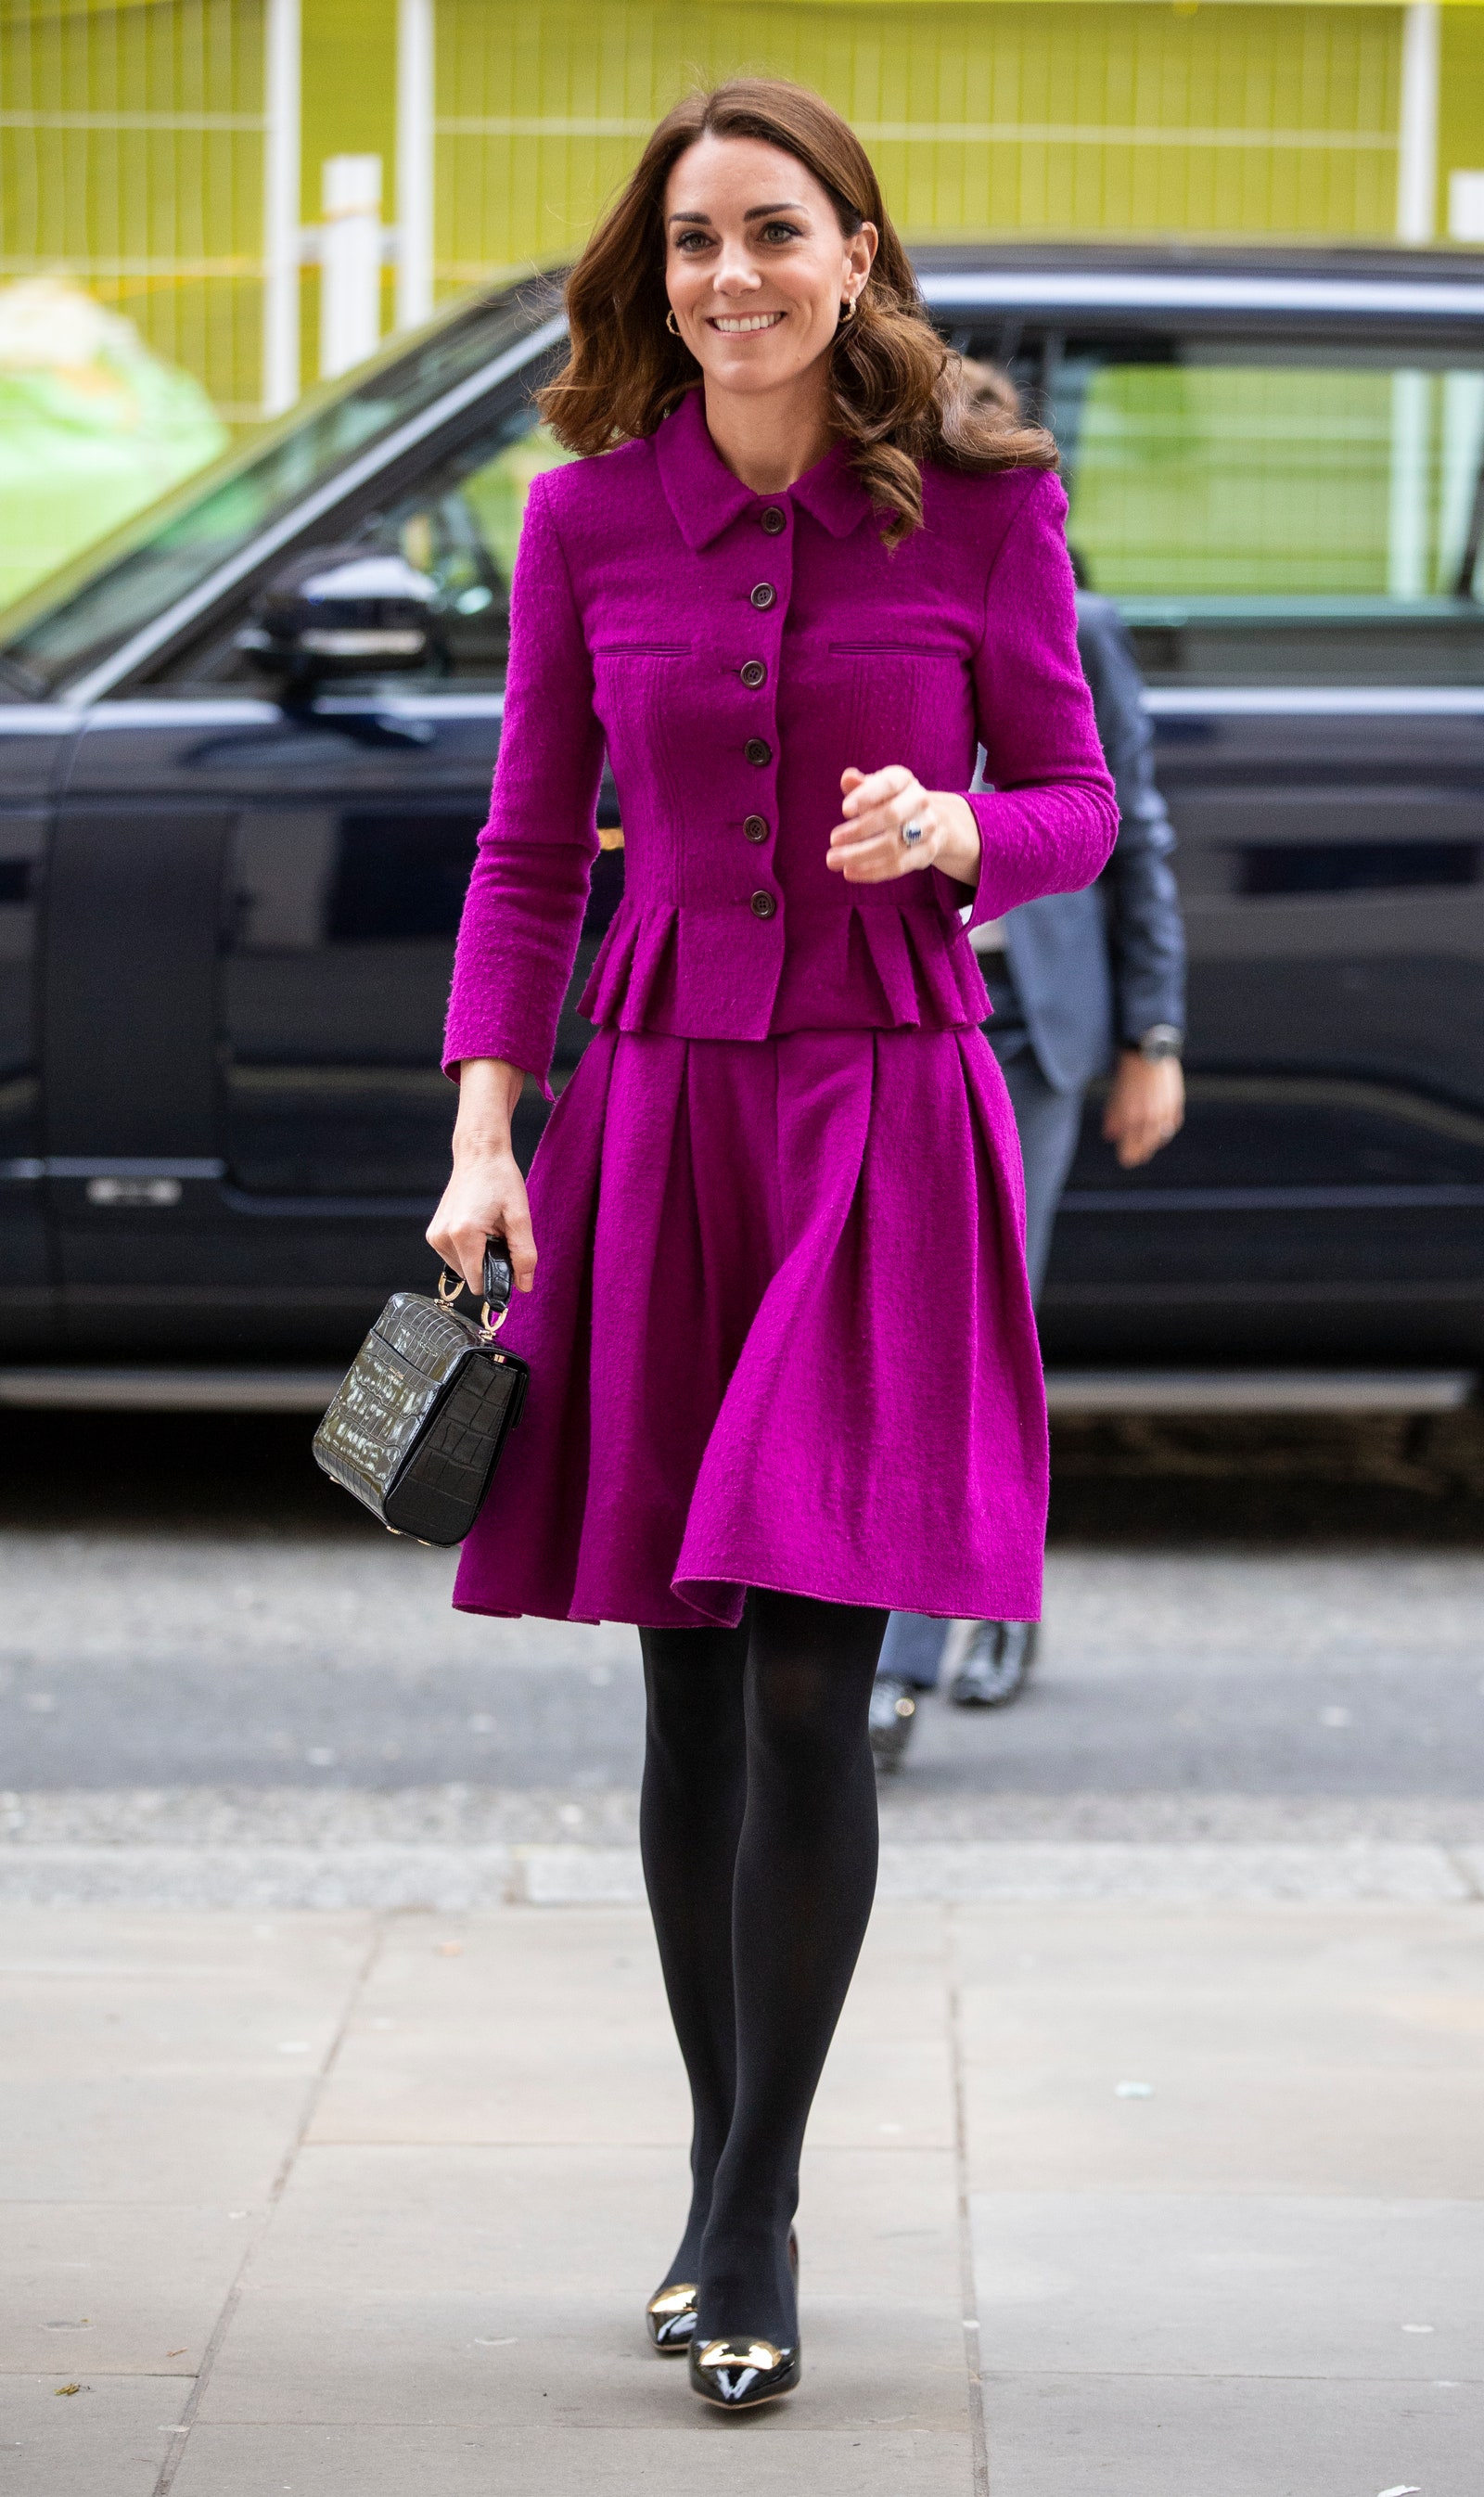 Nữ công nương sang trọng khi diện set đồ vải tweed màu tím hồng.